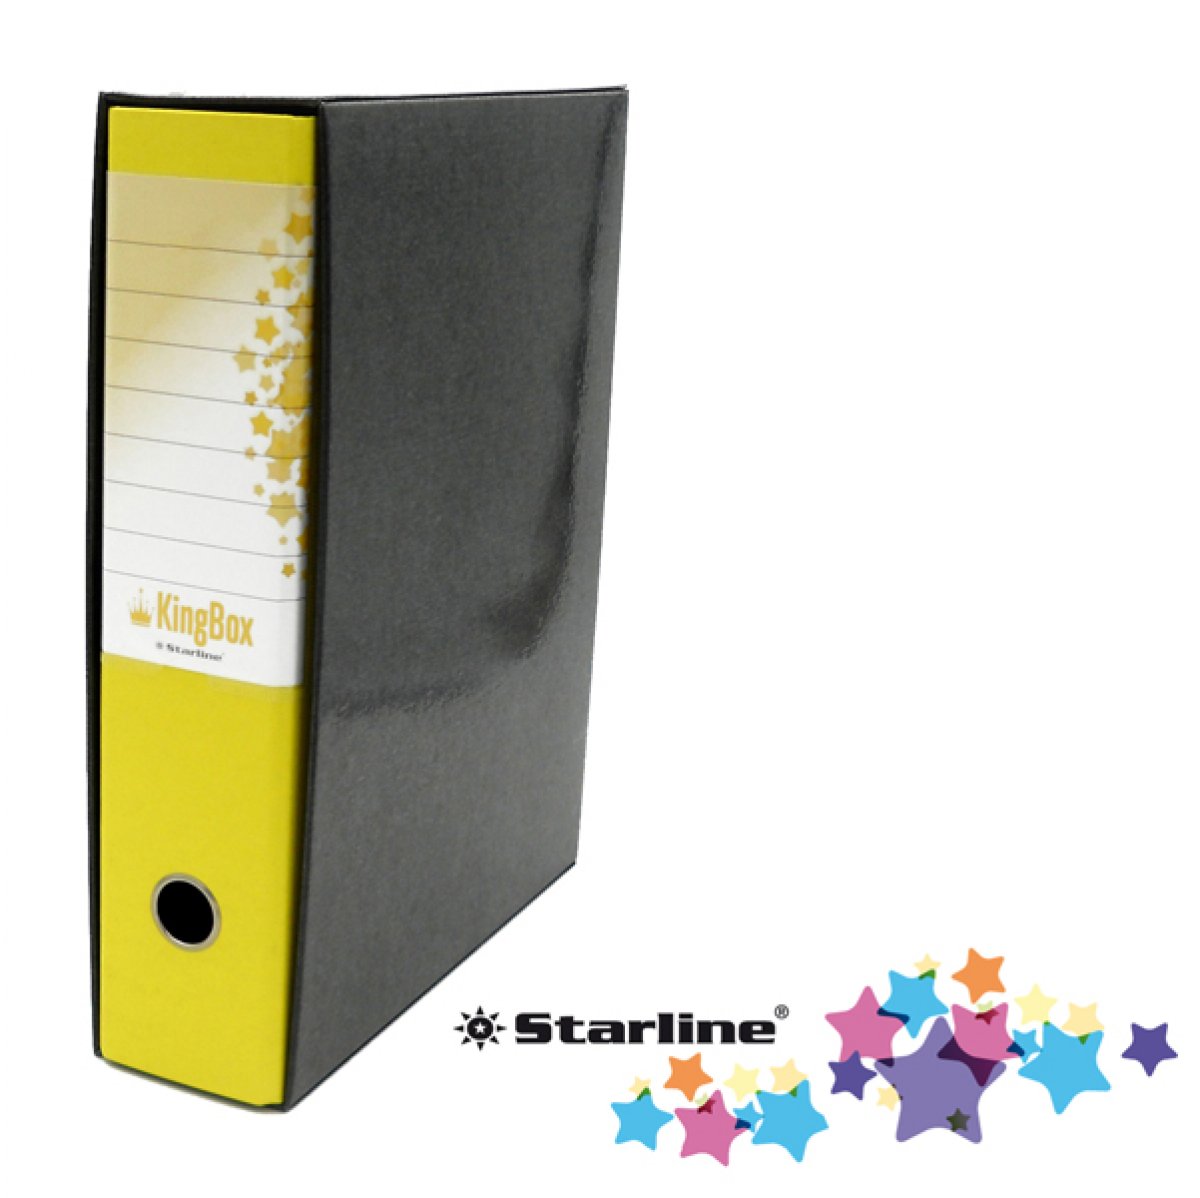 Registratore Kingbox - dorso 8 cm - protocollo 23x33 cm - giallo - Starline 